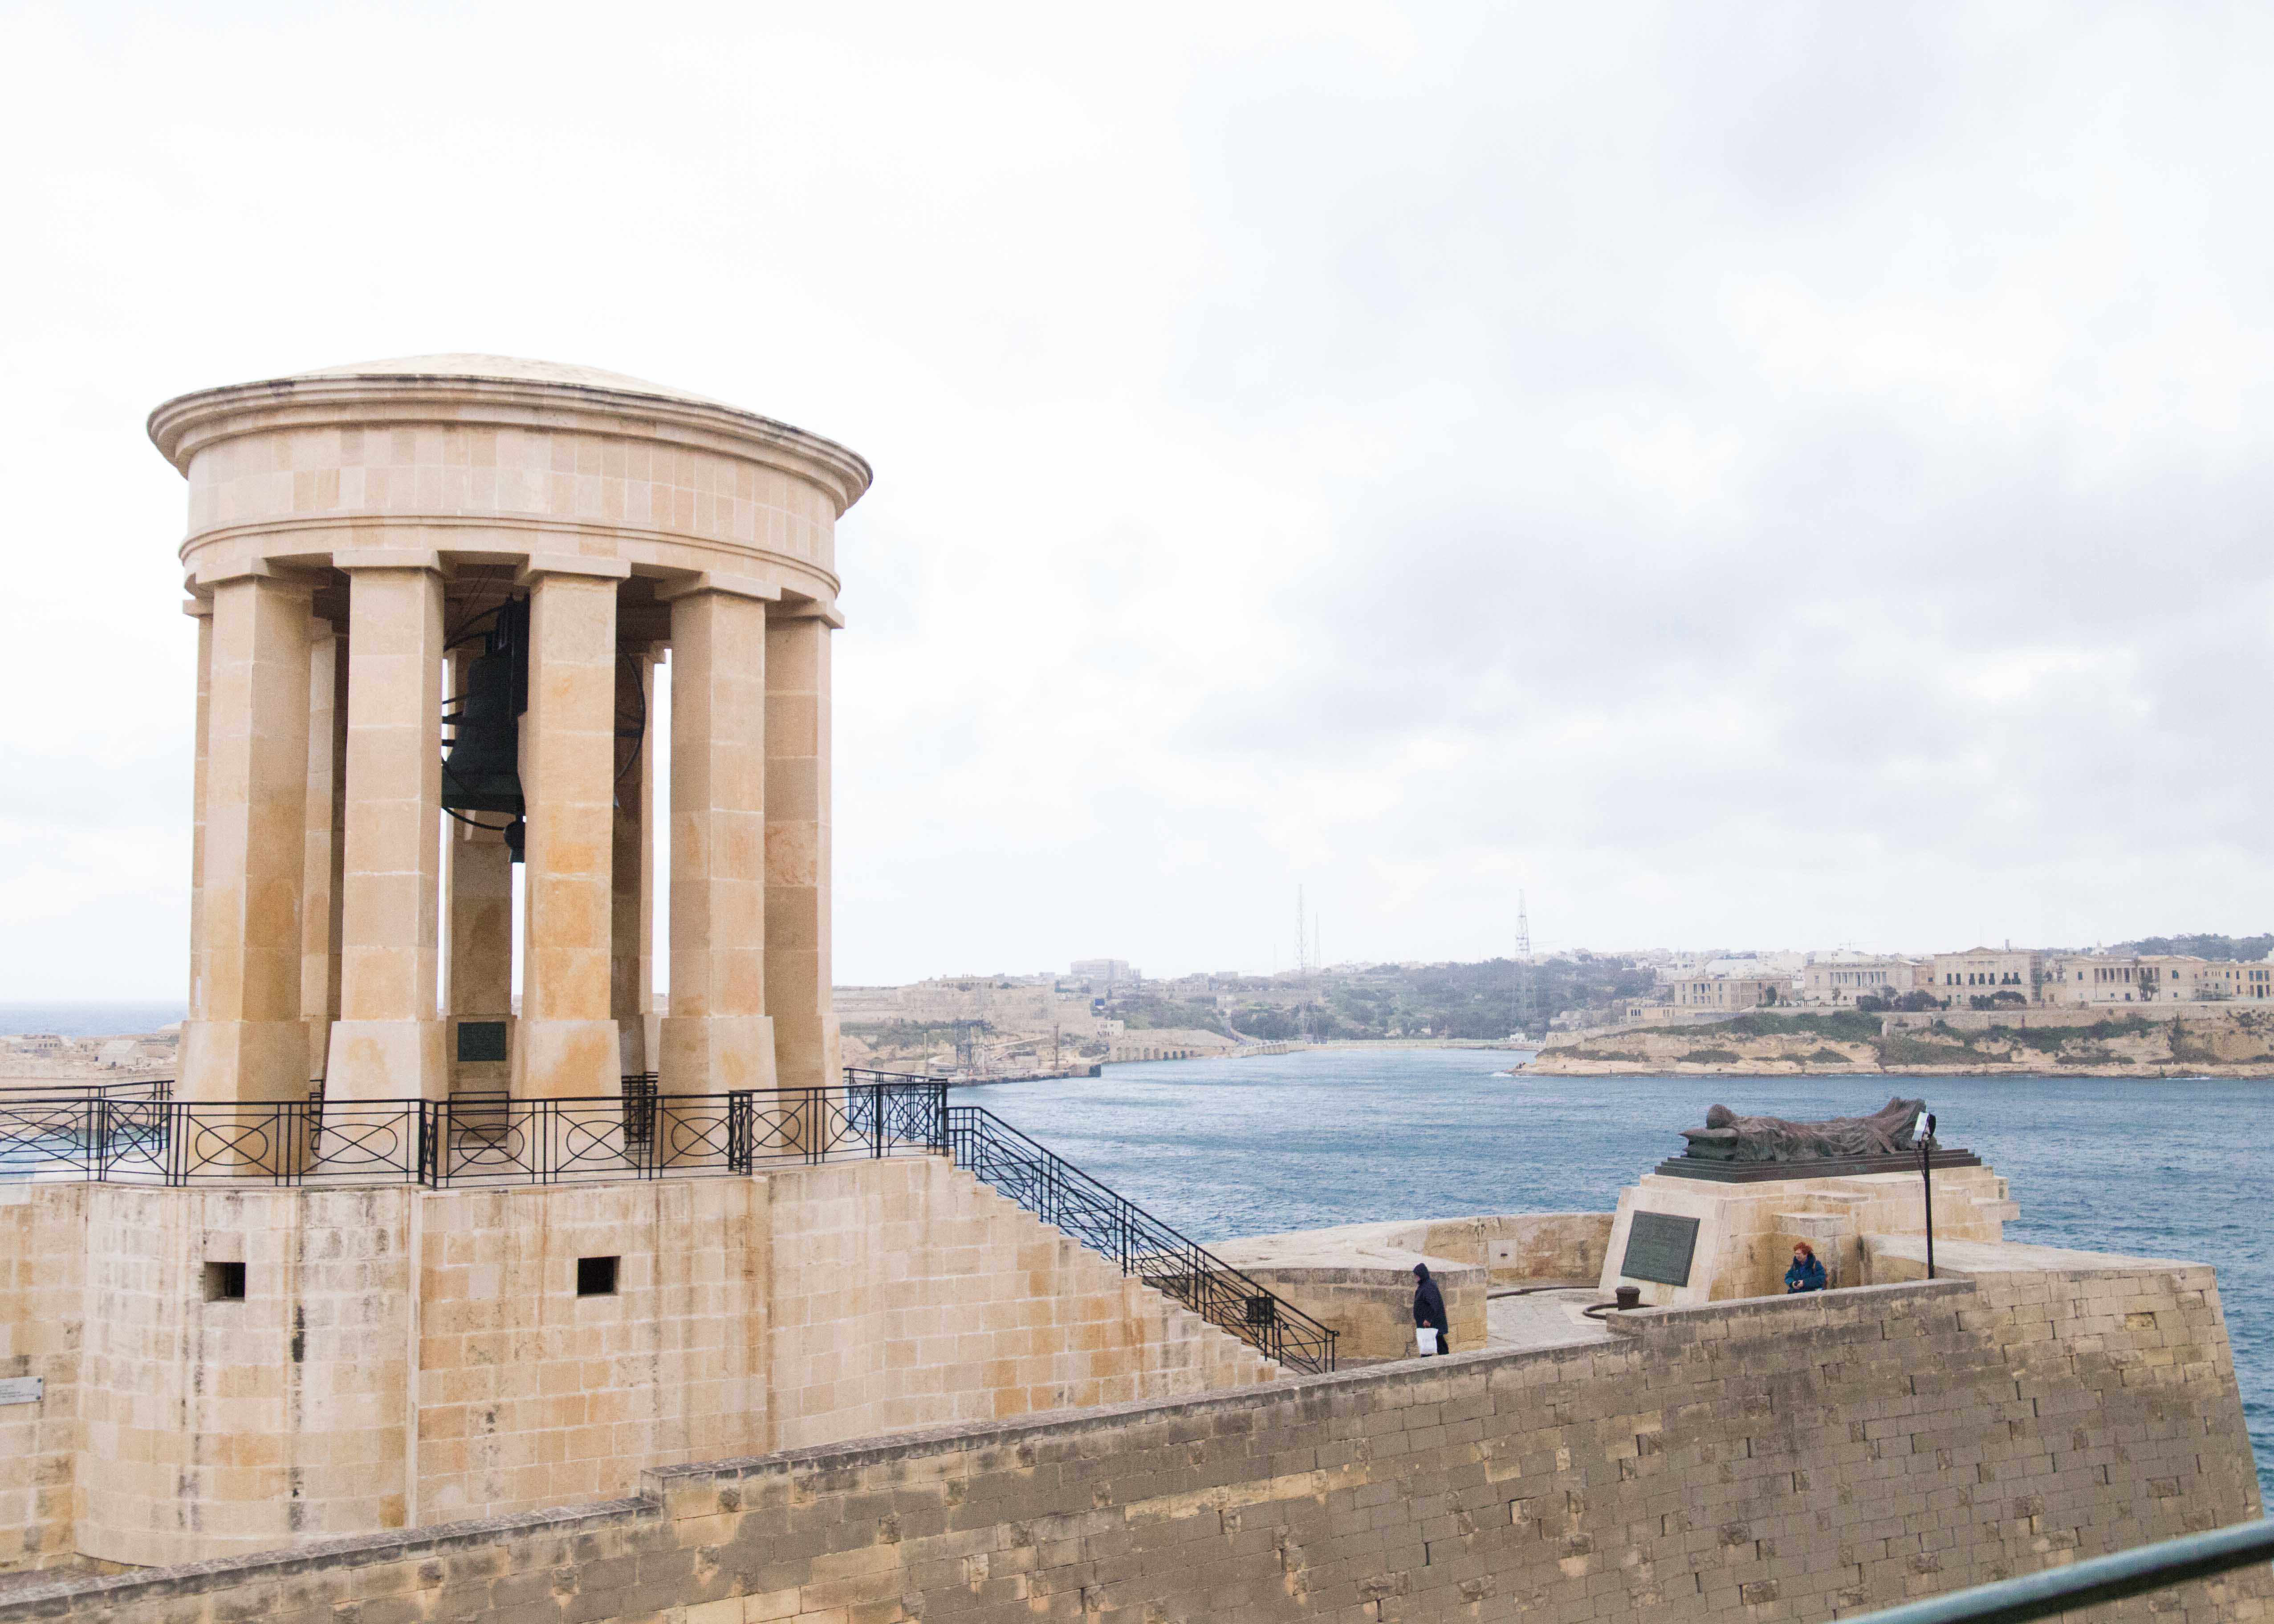 Where to visit in Valletta? Siege Bell War Memorial